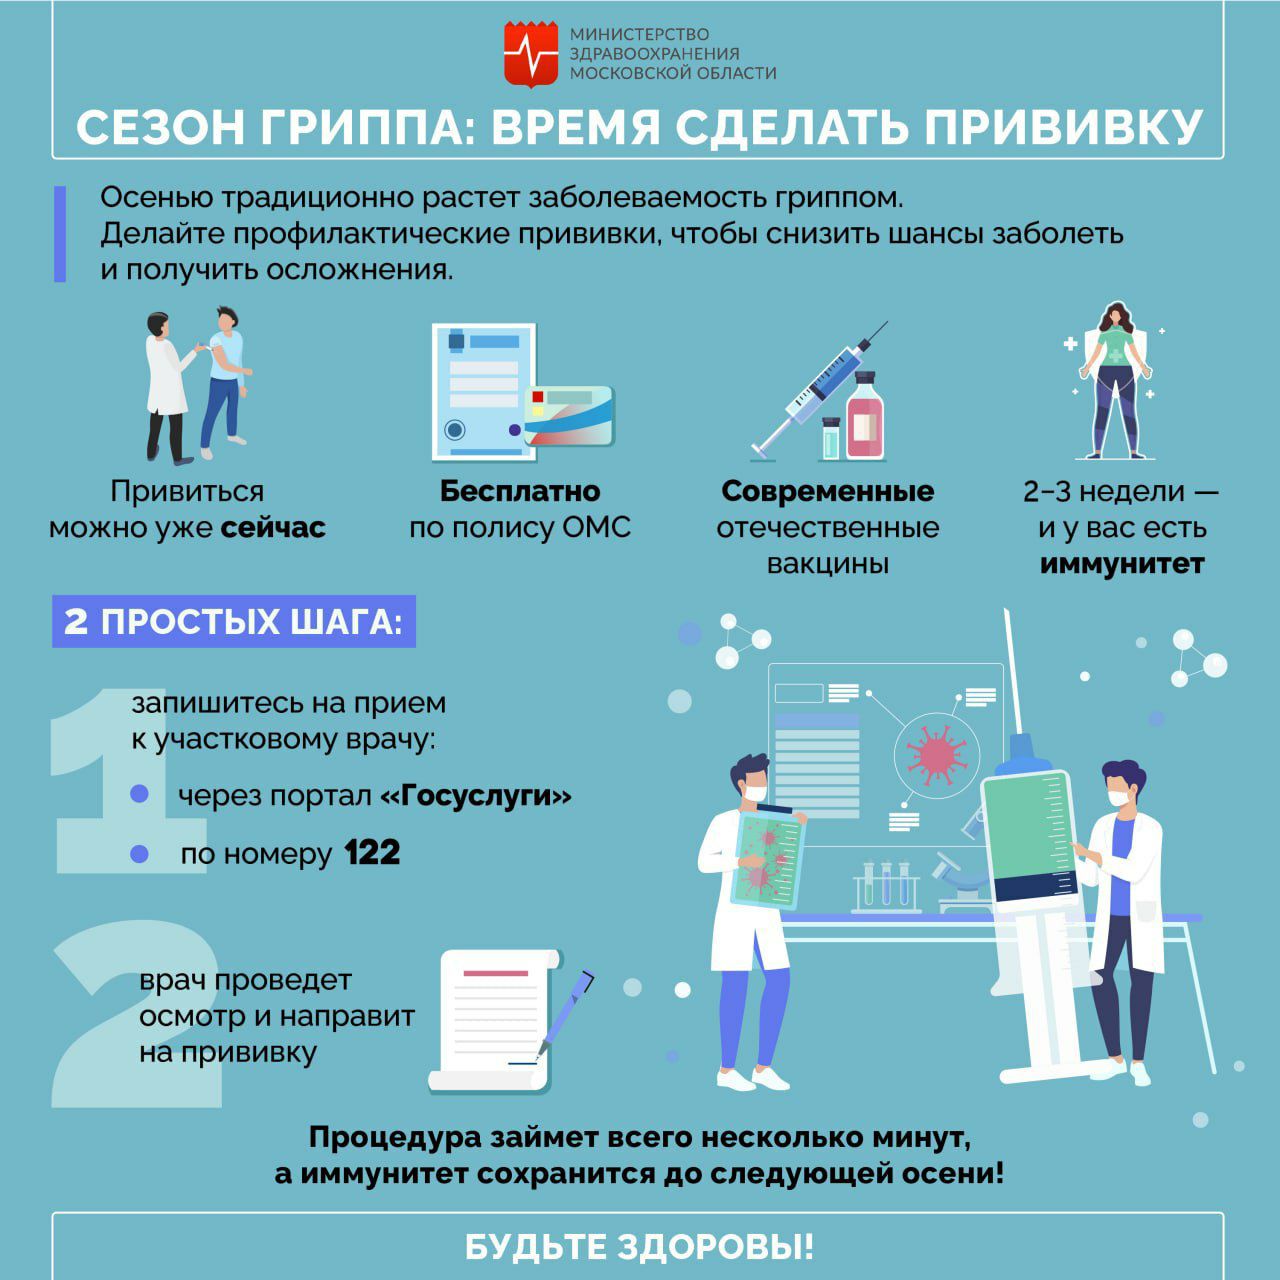  В Подмосковье началась кампания по вакцинации населения против гриппа